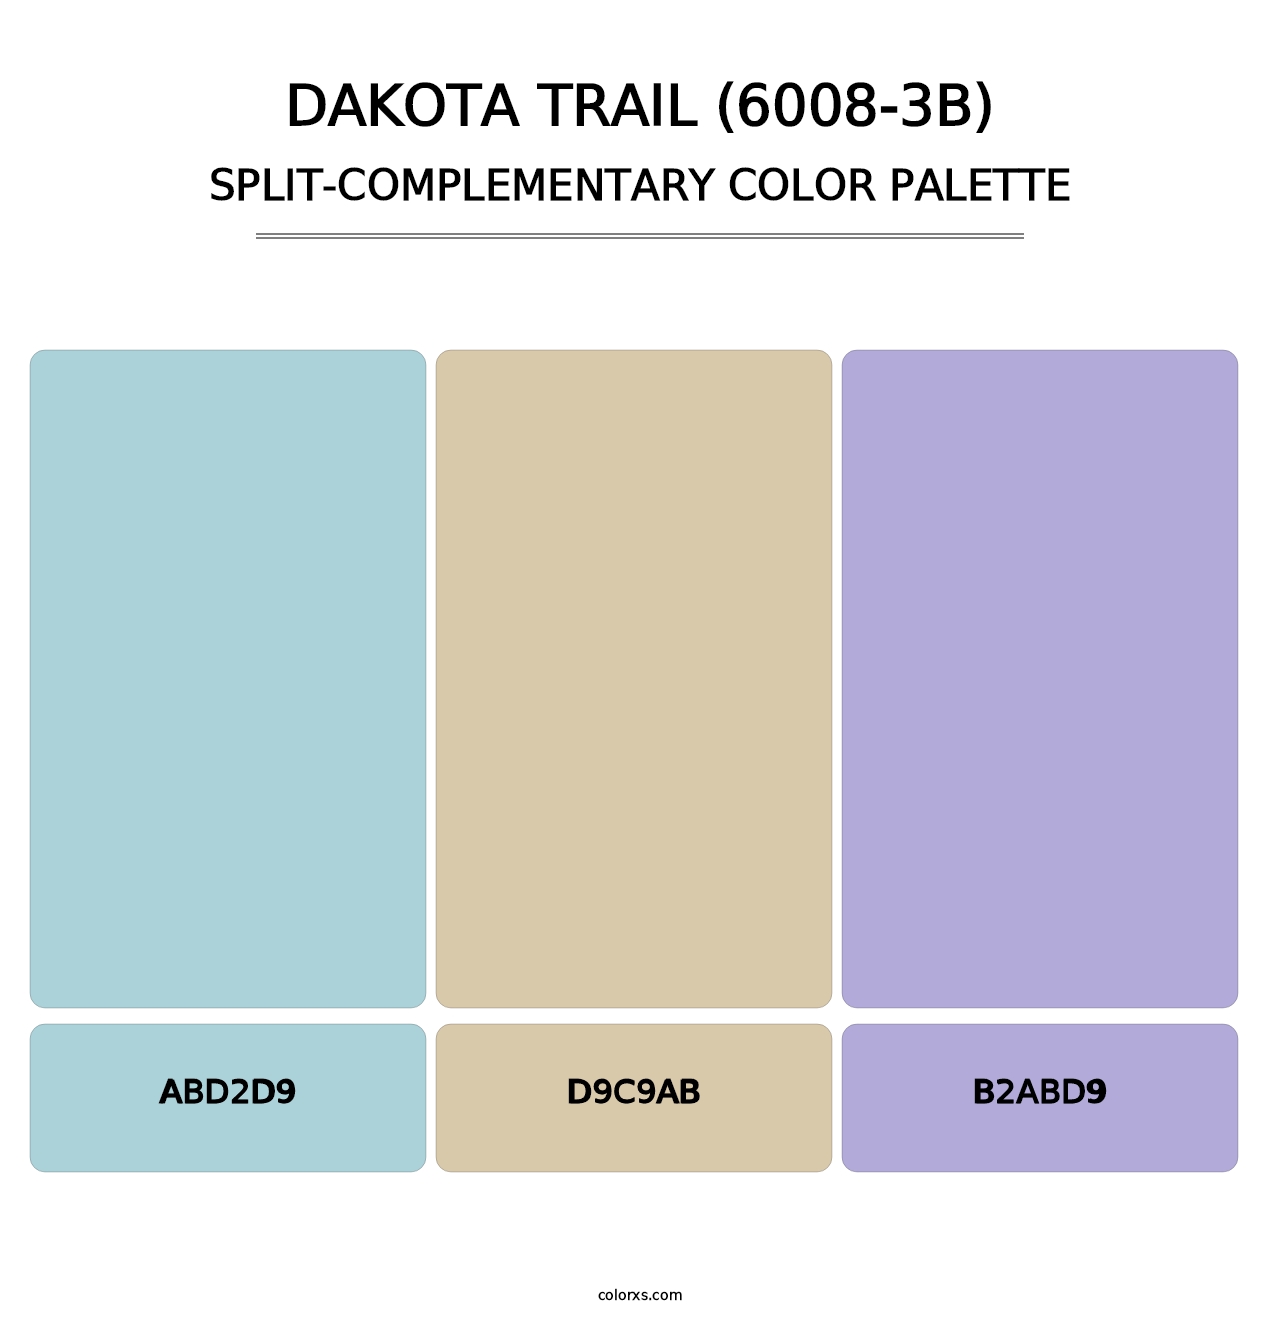 Dakota Trail (6008-3B) - Split-Complementary Color Palette